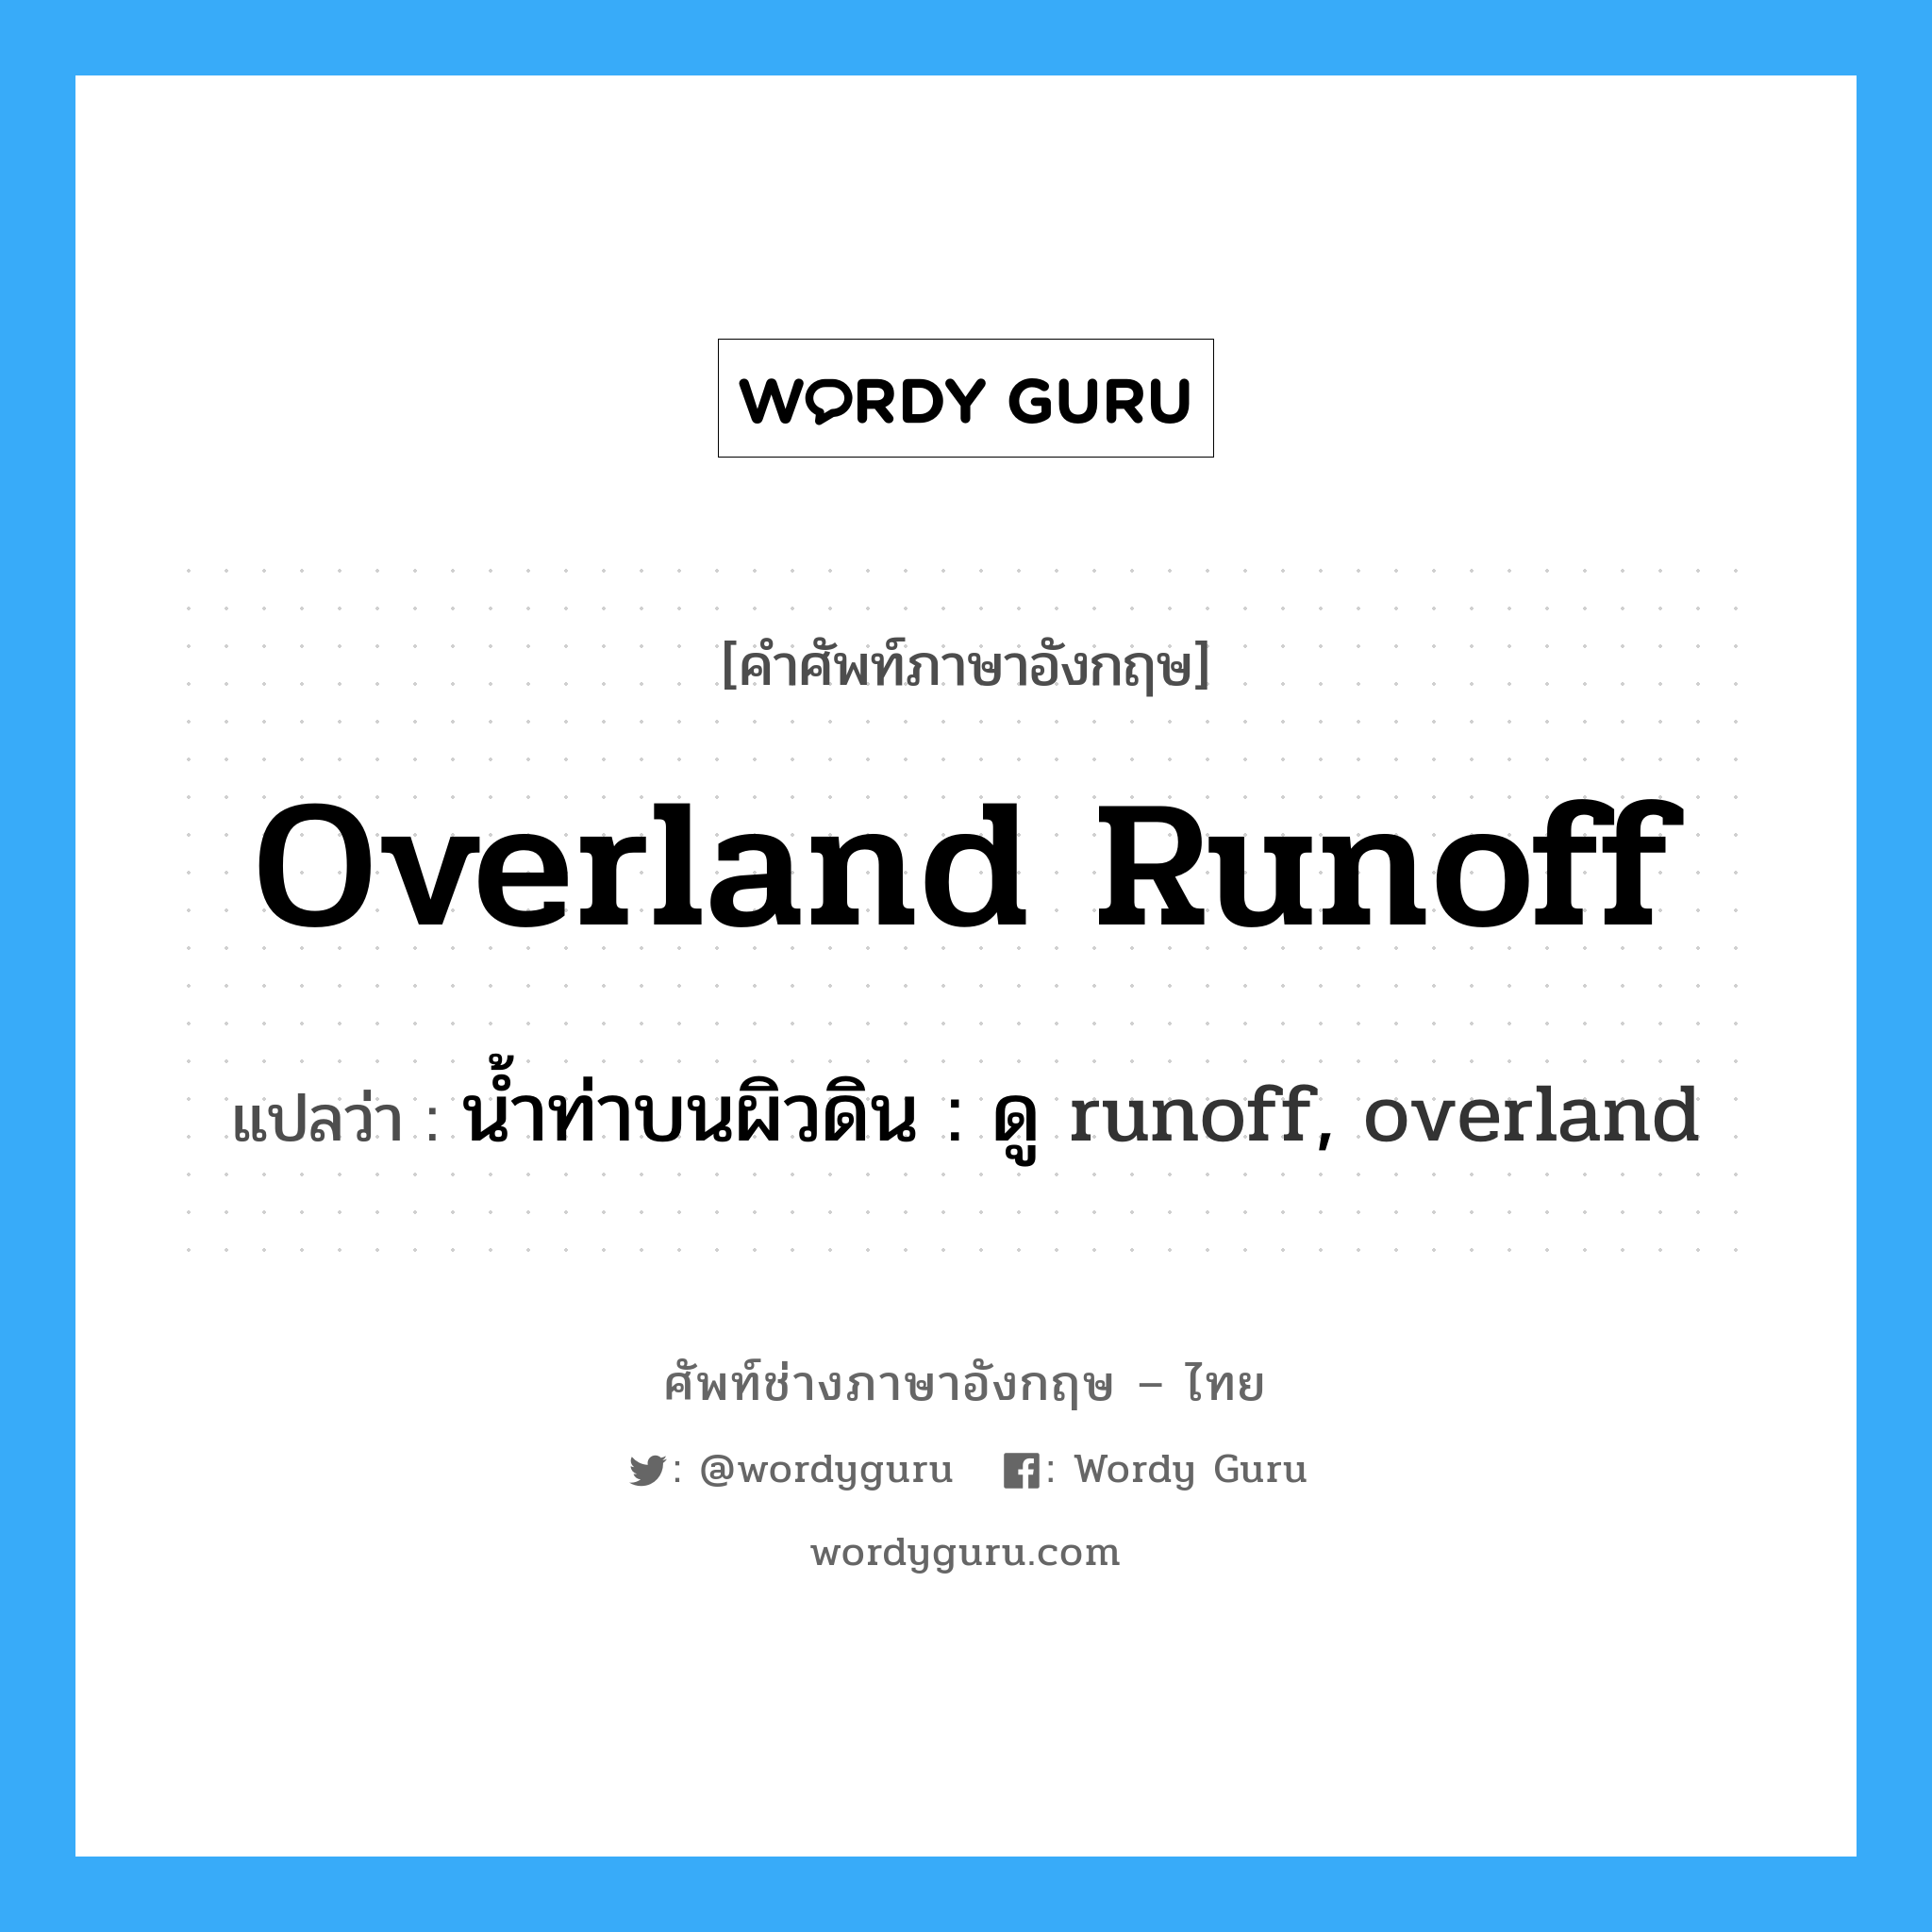 น้ำท่าบนผิวดิน : ดู runoff, overland ภาษาอังกฤษ?, คำศัพท์ช่างภาษาอังกฤษ - ไทย น้ำท่าบนผิวดิน : ดู runoff, overland คำศัพท์ภาษาอังกฤษ น้ำท่าบนผิวดิน : ดู runoff, overland แปลว่า overland runoff